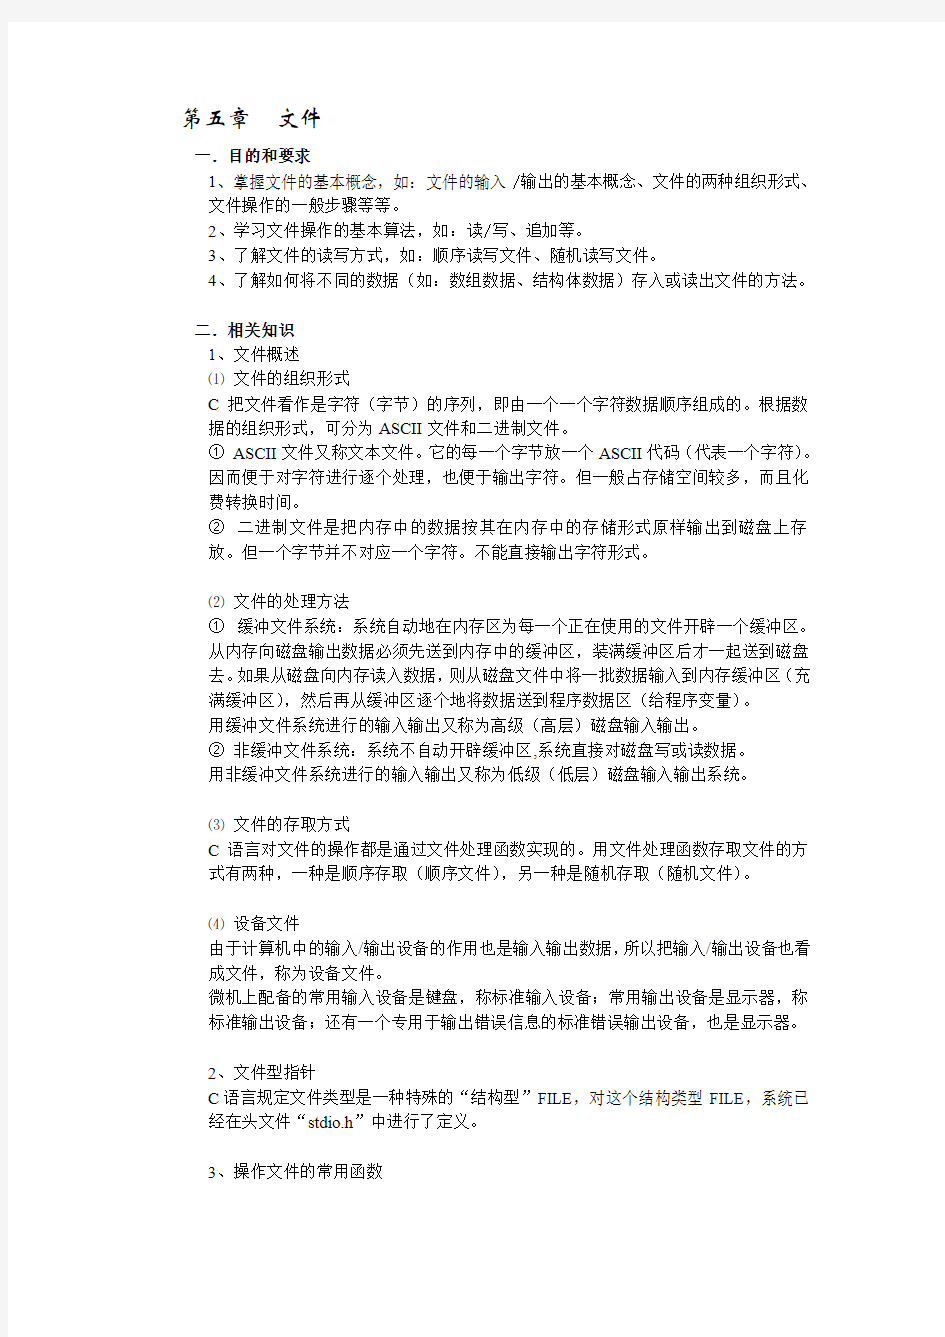 2014湖南大学c语言实验题目及其答案 (5)